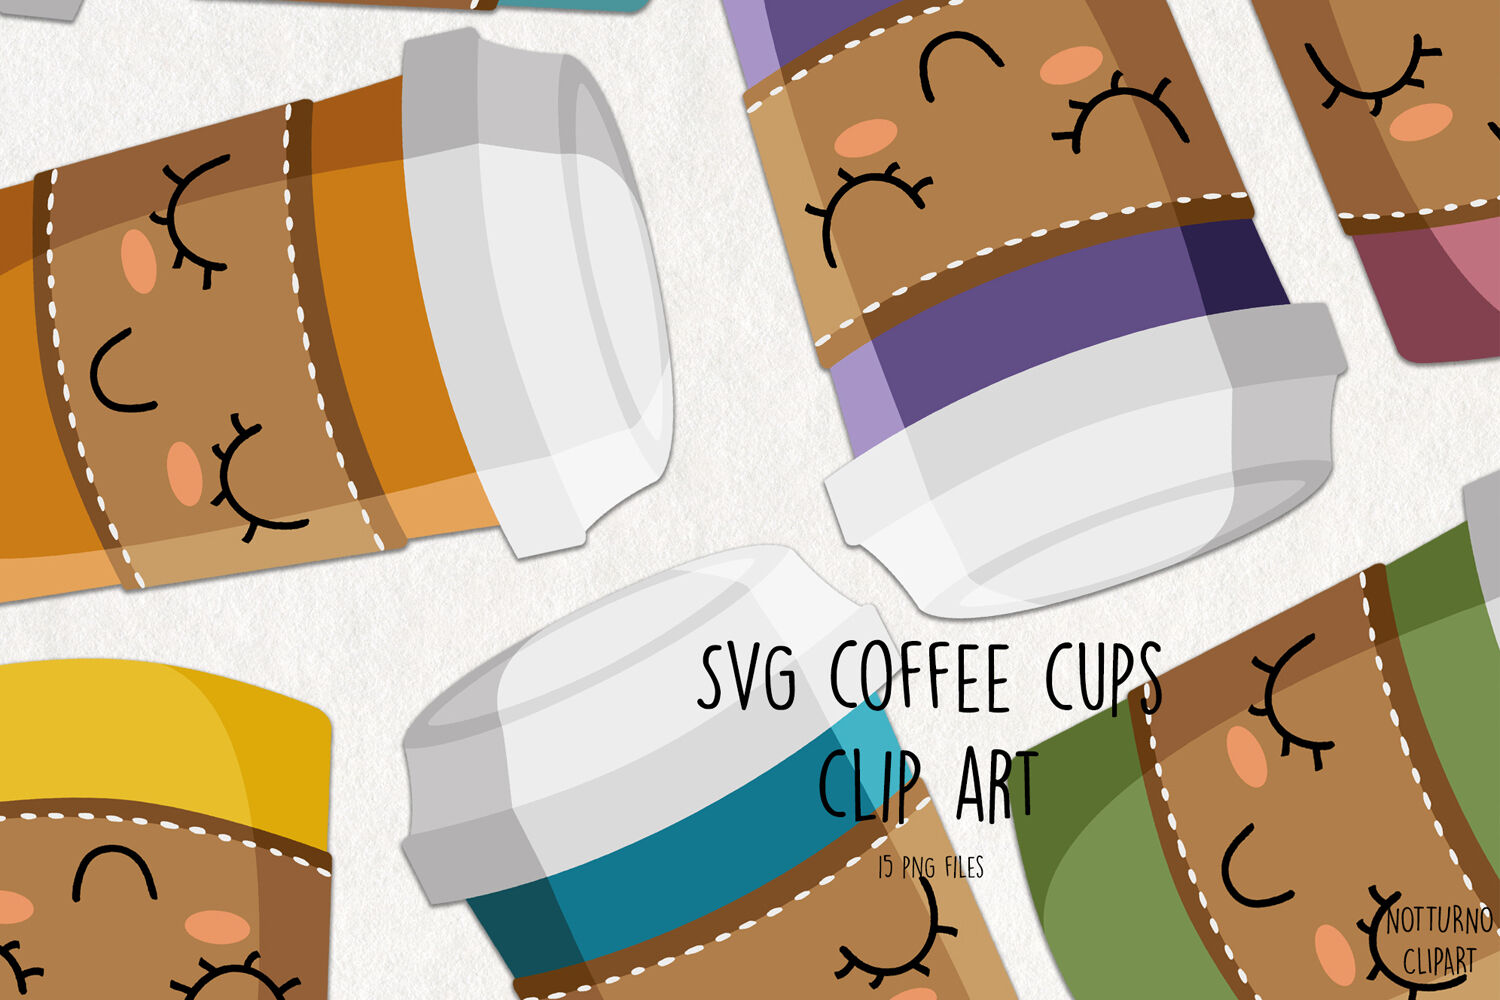 https://media1.thehungryjpeg.com/thumbs2/ori_3730255_vp4rvz4fl4zd2jmg3yzispp8j2u139uh7jq14nvn_svg-coffee-cups-clip-art-coffee-cup-graphics-set-of-15-svg-and-png-c.jpg